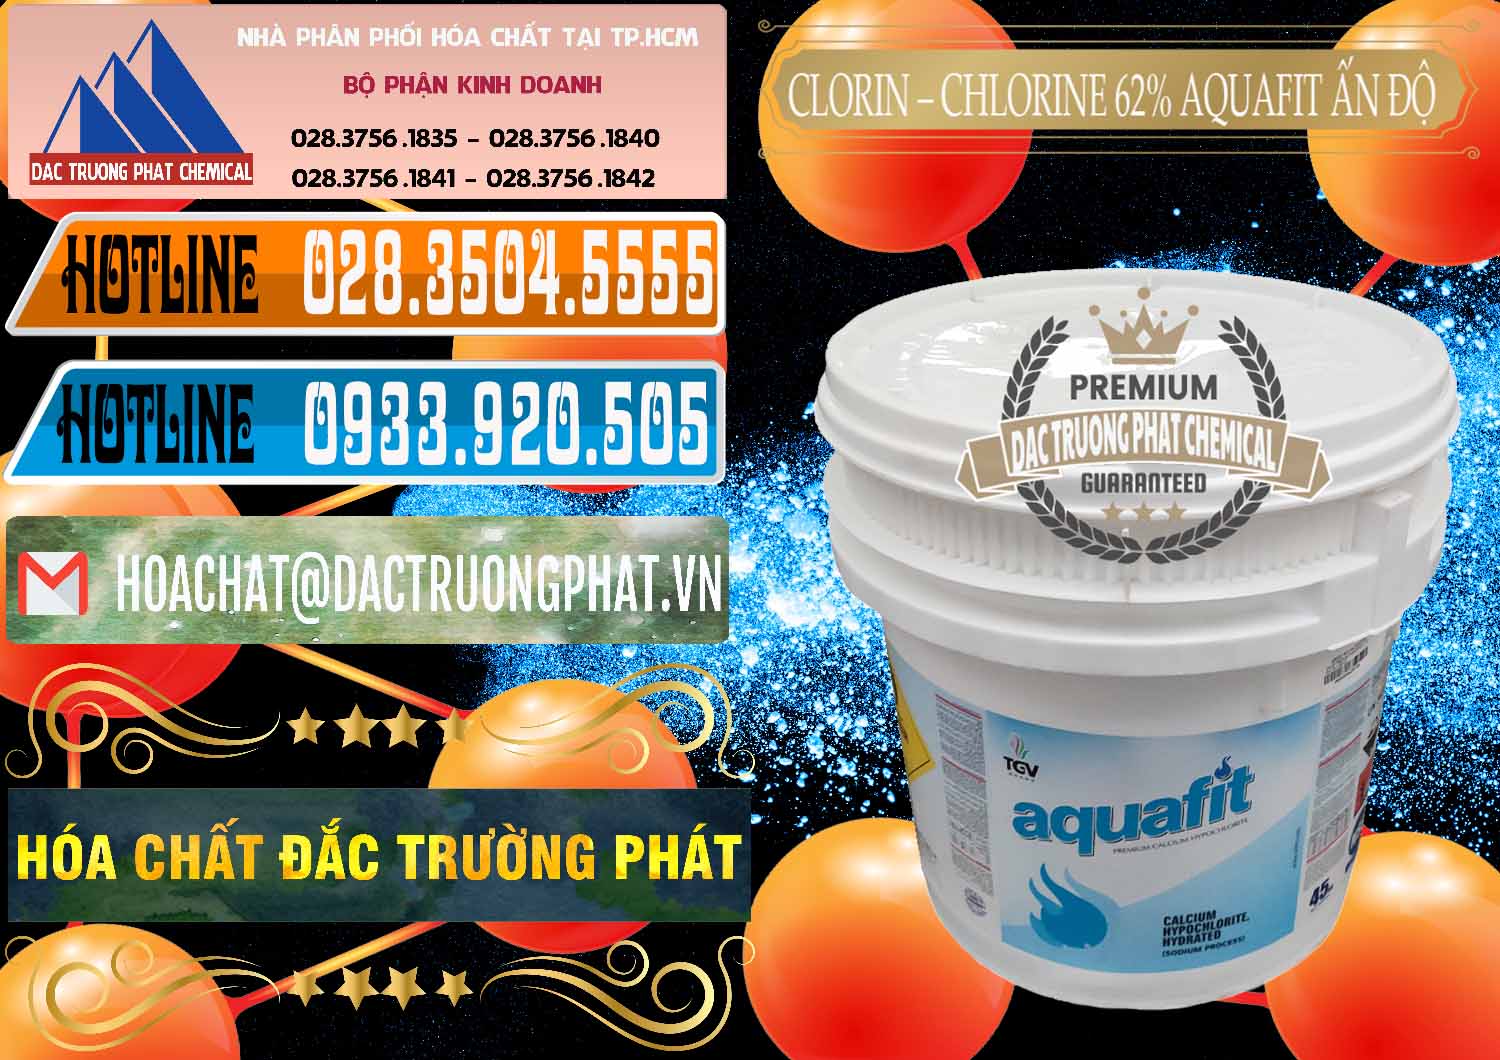 Đơn vị kinh doanh và bán Clorin - Chlorine 62% Aquafit Thùng Lùn Ấn Độ India - 0057 - Đơn vị chuyên nhập khẩu & cung cấp hóa chất tại TP.HCM - stmp.net